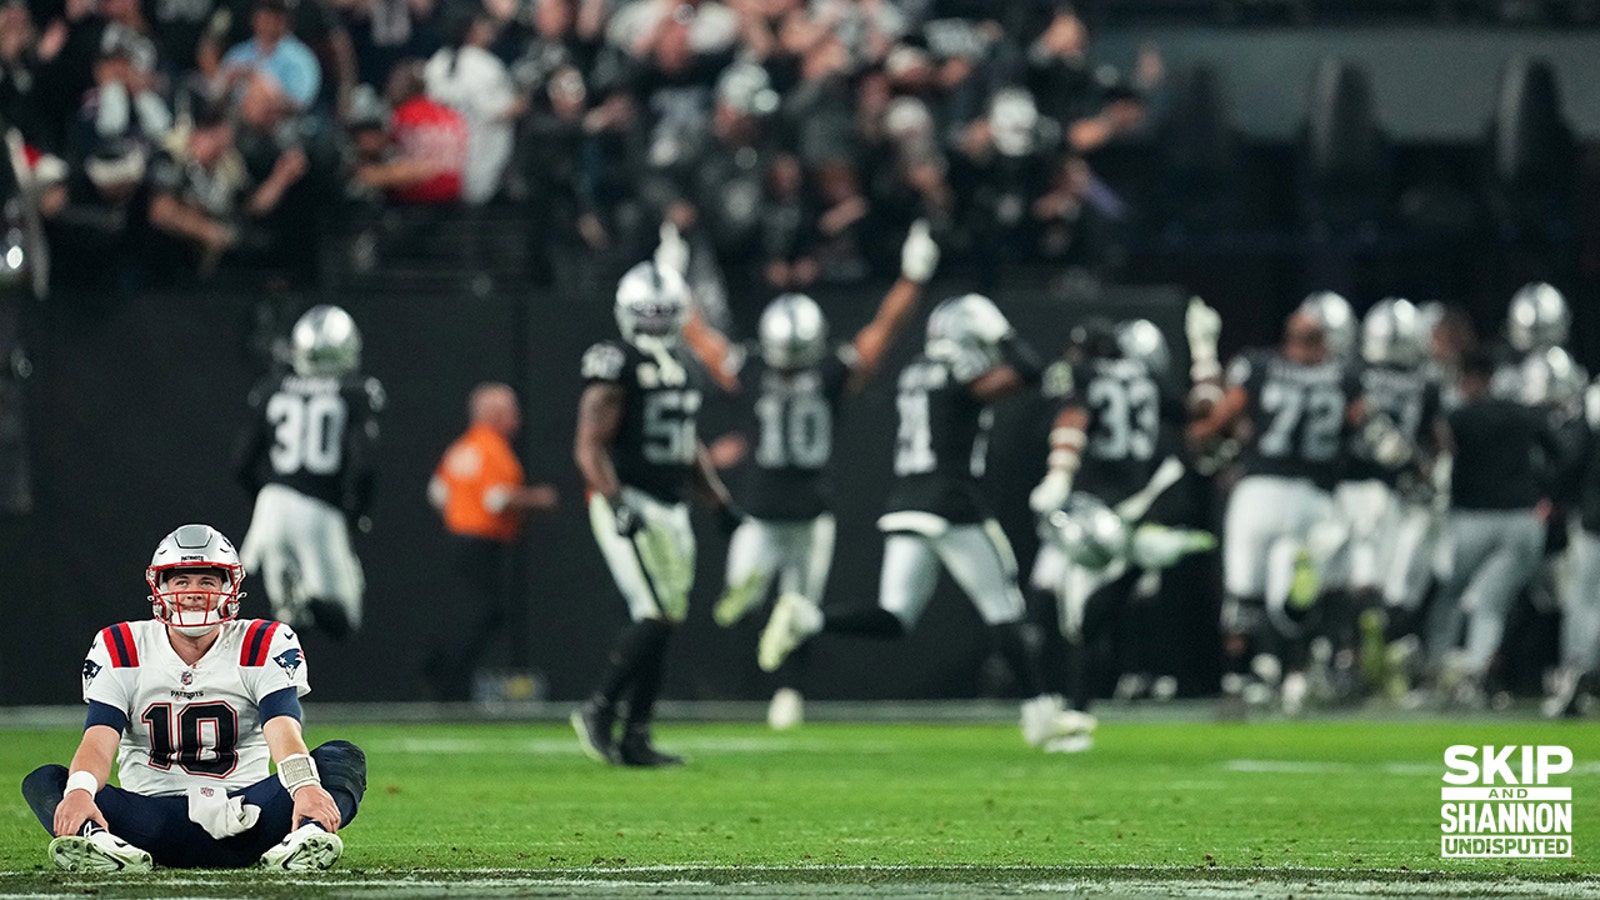 Raiders score miraculous game-winning TD